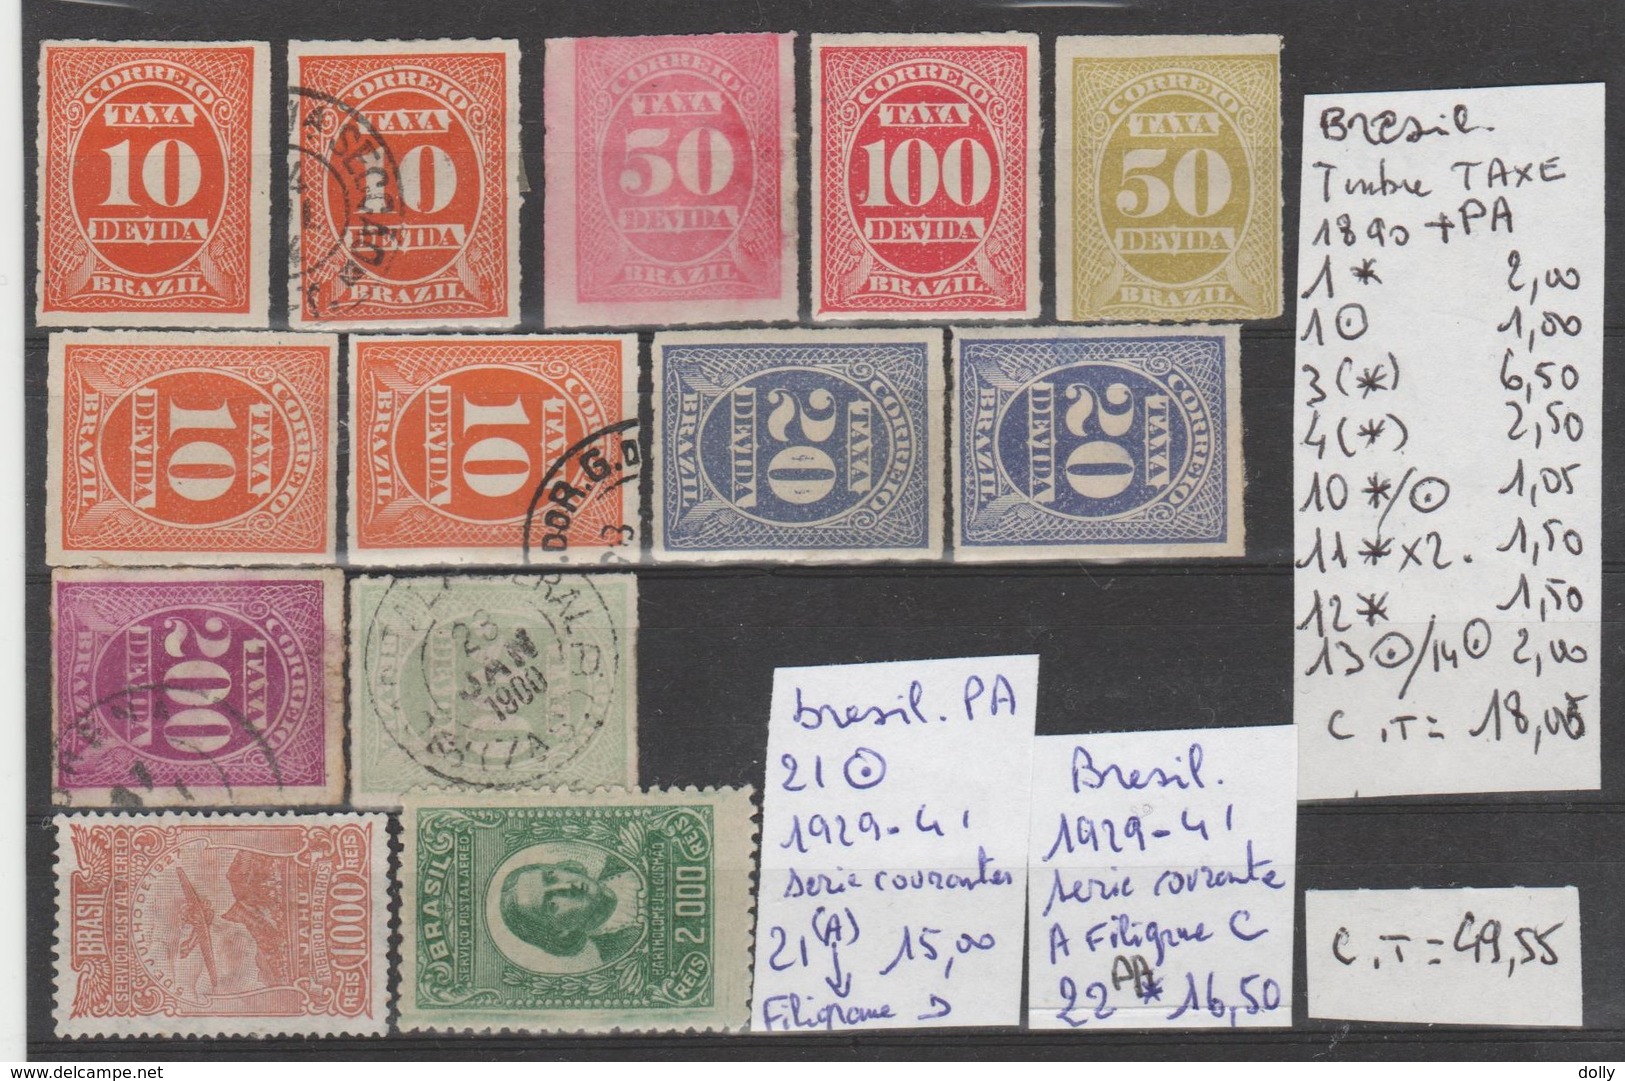 LOT DE TIMBRES DU BRESIL OBLITEREES / * / (*) NrVOIR SUR PAPIER AVEC TIMBRES  COTE 49.55€ - Unused Stamps